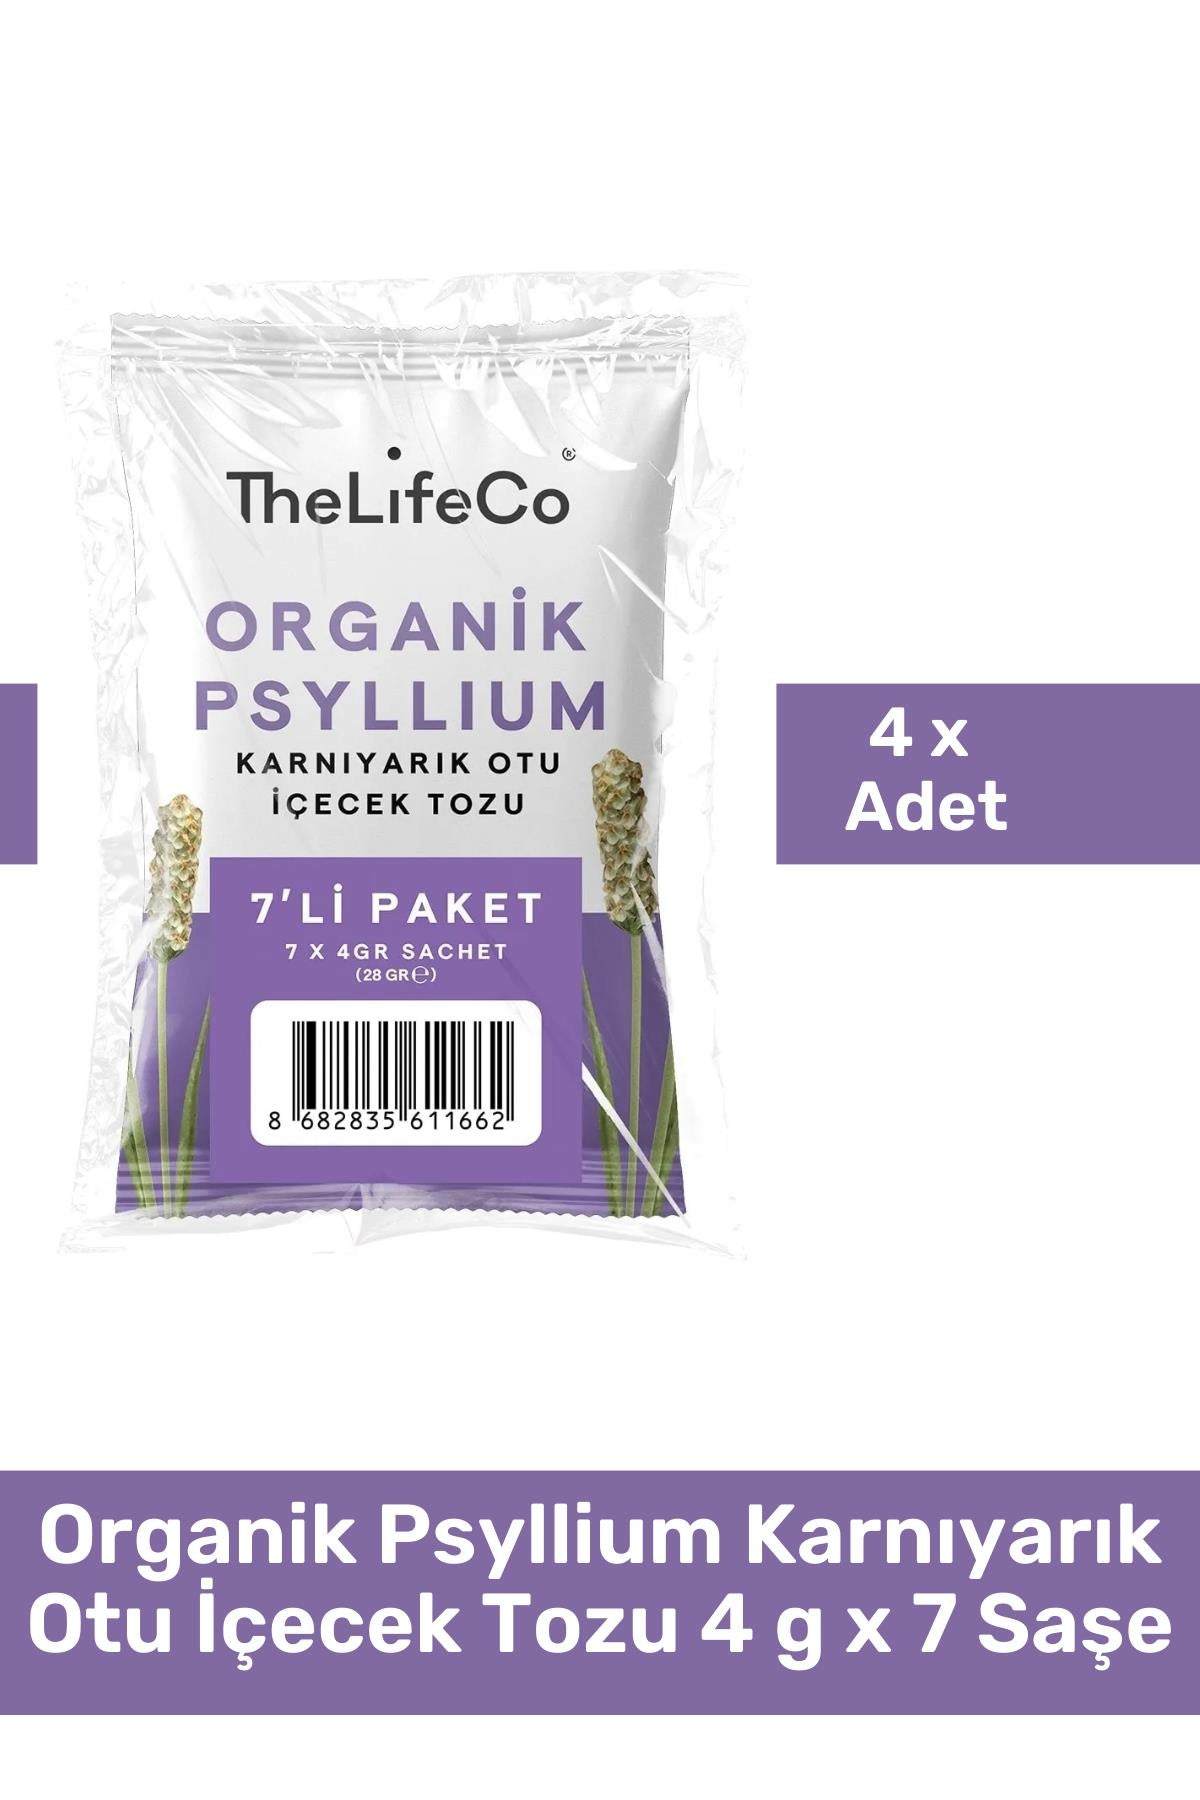 TheLifeCo Organik Psyllium Karnıyarık Otu İçecek Tozu 4 g x 7 Saşe 4'lü Paket